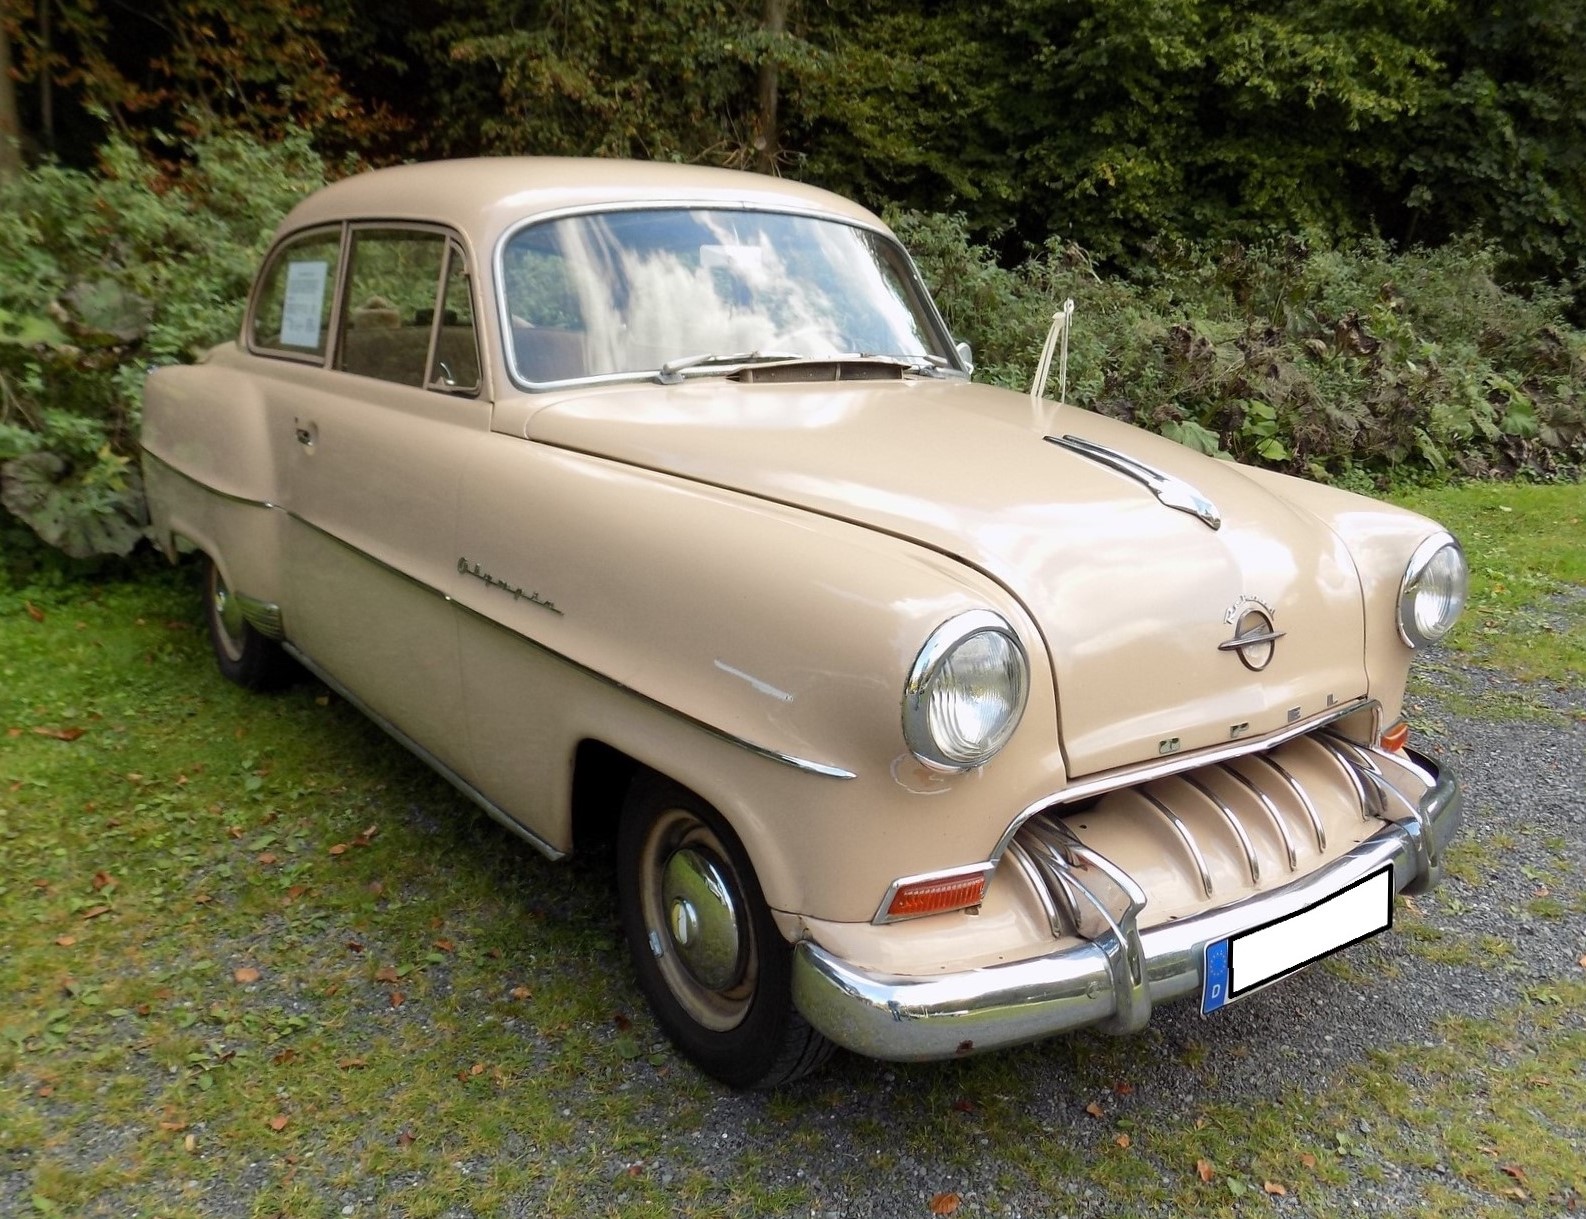 Opel Olympia Rekord der Modelljahre 1953 bis 1954. Dieses Modell bestach durch seine moderne Pontonkarosserie und seine extrem gute Verarbeitung. Der Vierzylinderreihenmotor mit einem Hubraum von 1488 cm³ leistet 40 PS. Von diesem Limousine-Modell wurden in den beiden Modelljahren 113.966 Einheiten produziert. Um in den Fahrgenuss eines solchen Autos zu kommen, musste man mindestens DM 6.410,00 an den freundlichen Opel-Händler überweisen. Mit diversen  Facelifts  blieb das Modell bis 1957 im Programm. Oldtimertreffen Schwarzwaldhaus im Neandertal/Mettmann.